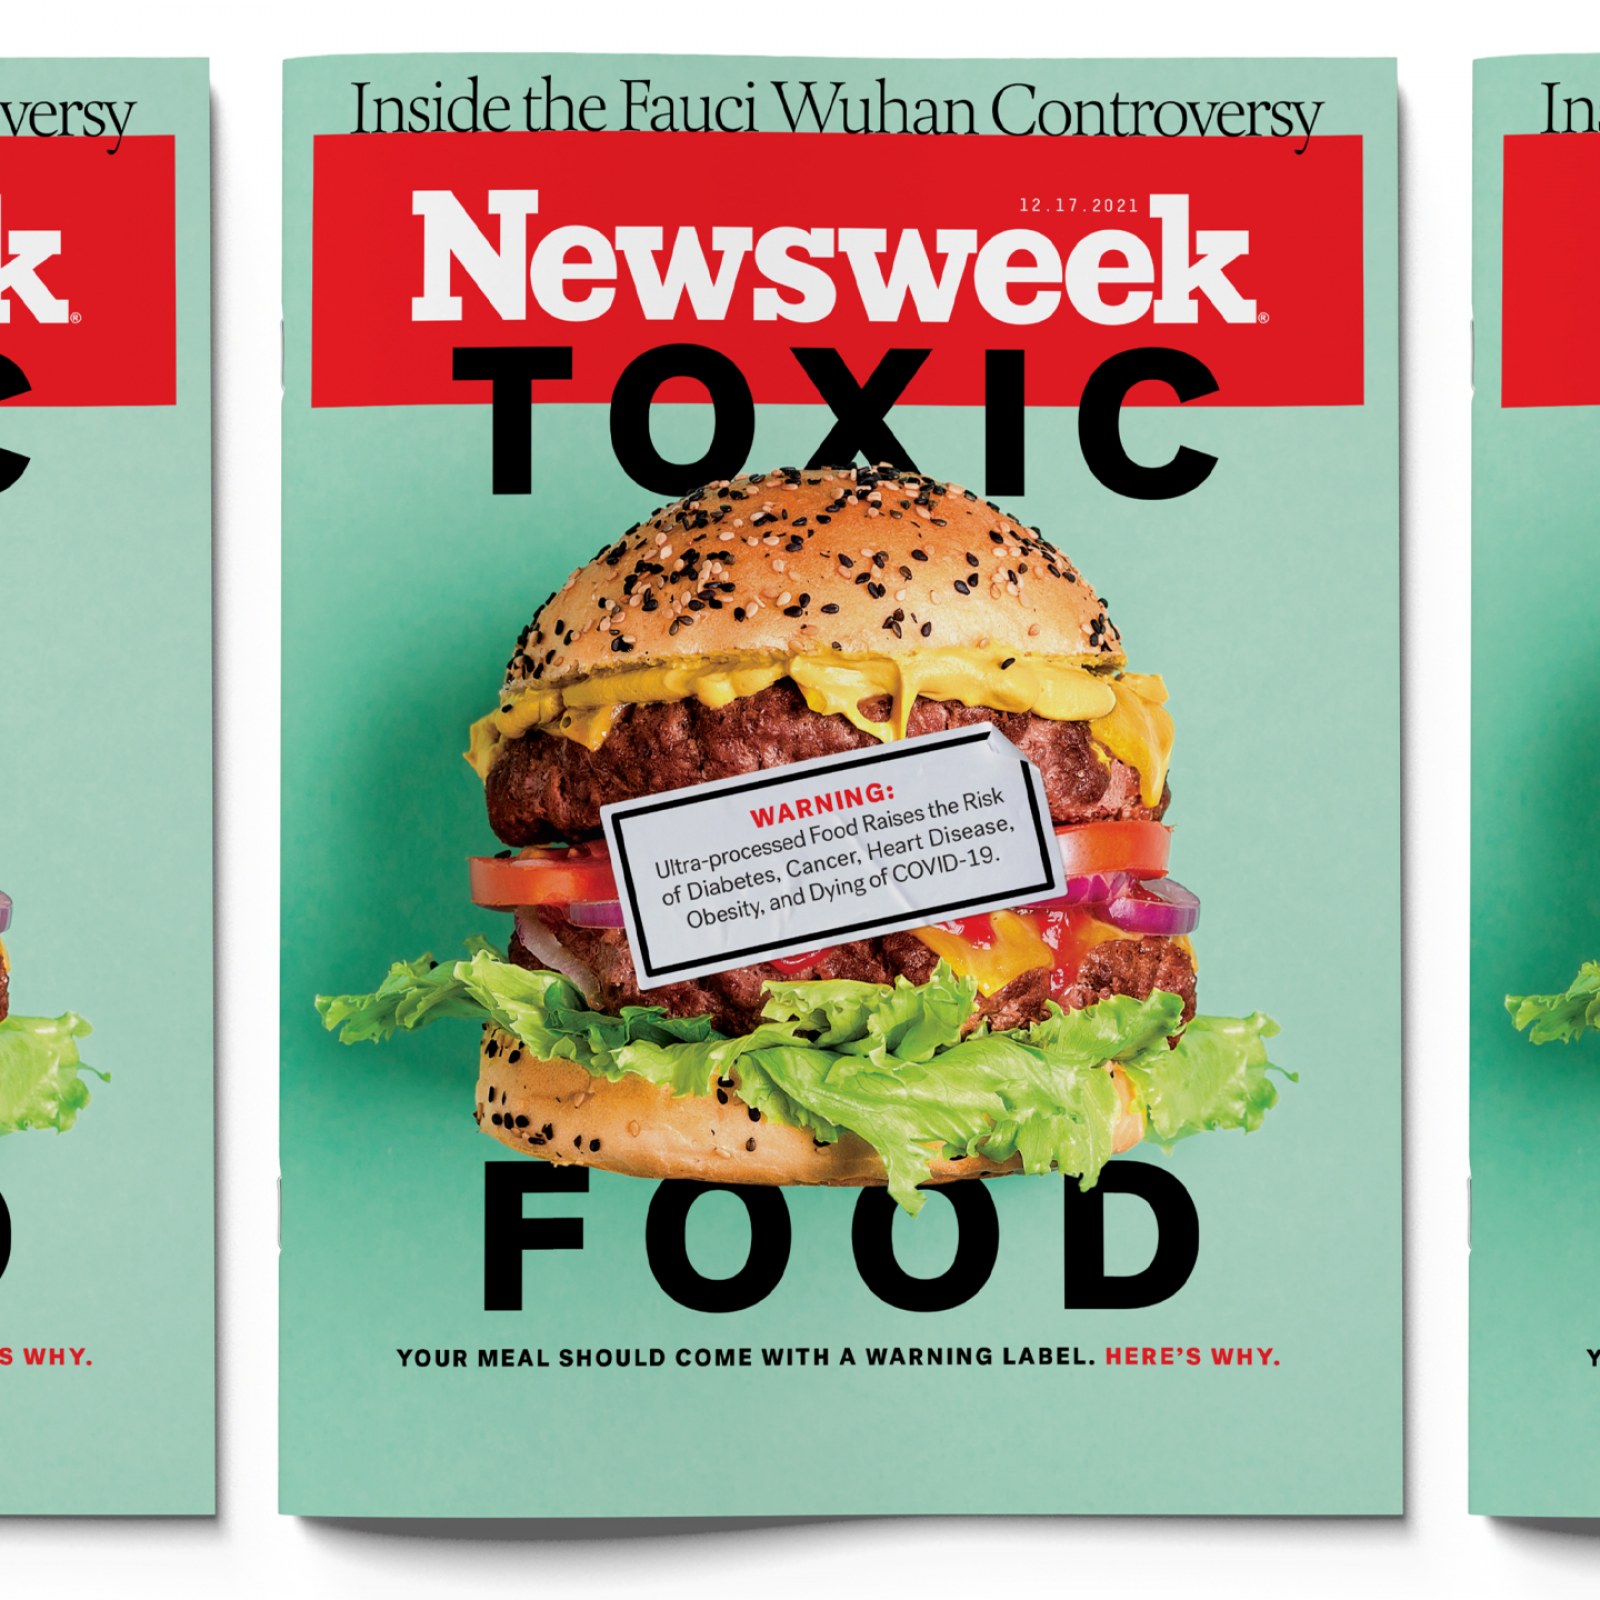 https://d.newsweek.com/en/full/1946869/fe-cover-toxic-food-banner.jpg?w=1600&h=1600&l=49&t=48&q=88&f=851b79af3194a65f9934bce51aa67845